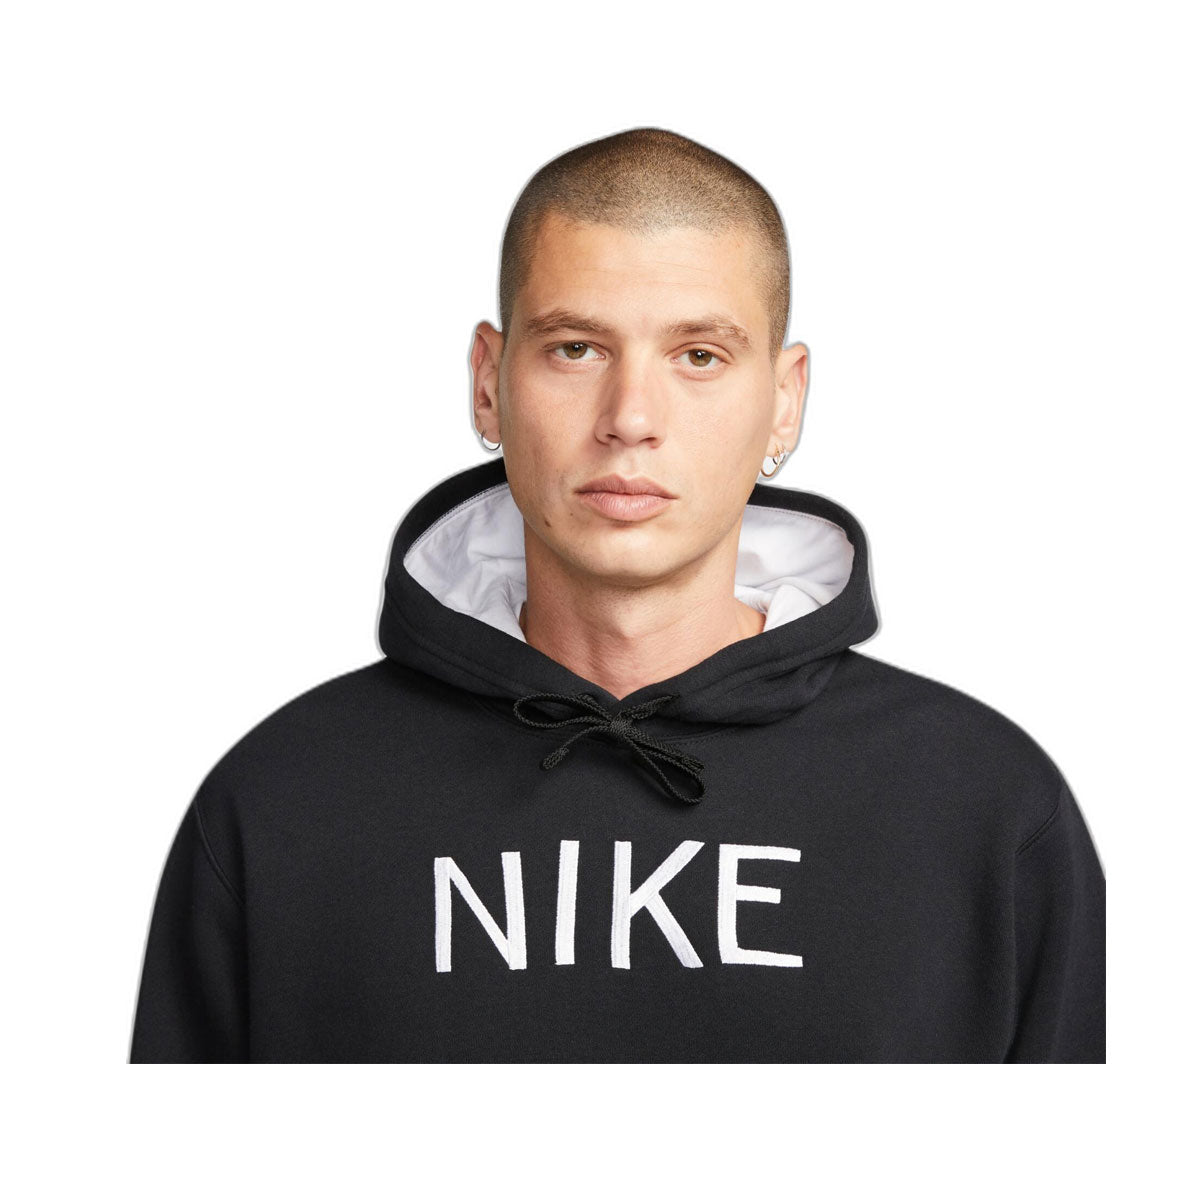 Nike Men's Sportswear Pullover Hoodie - KickzStore